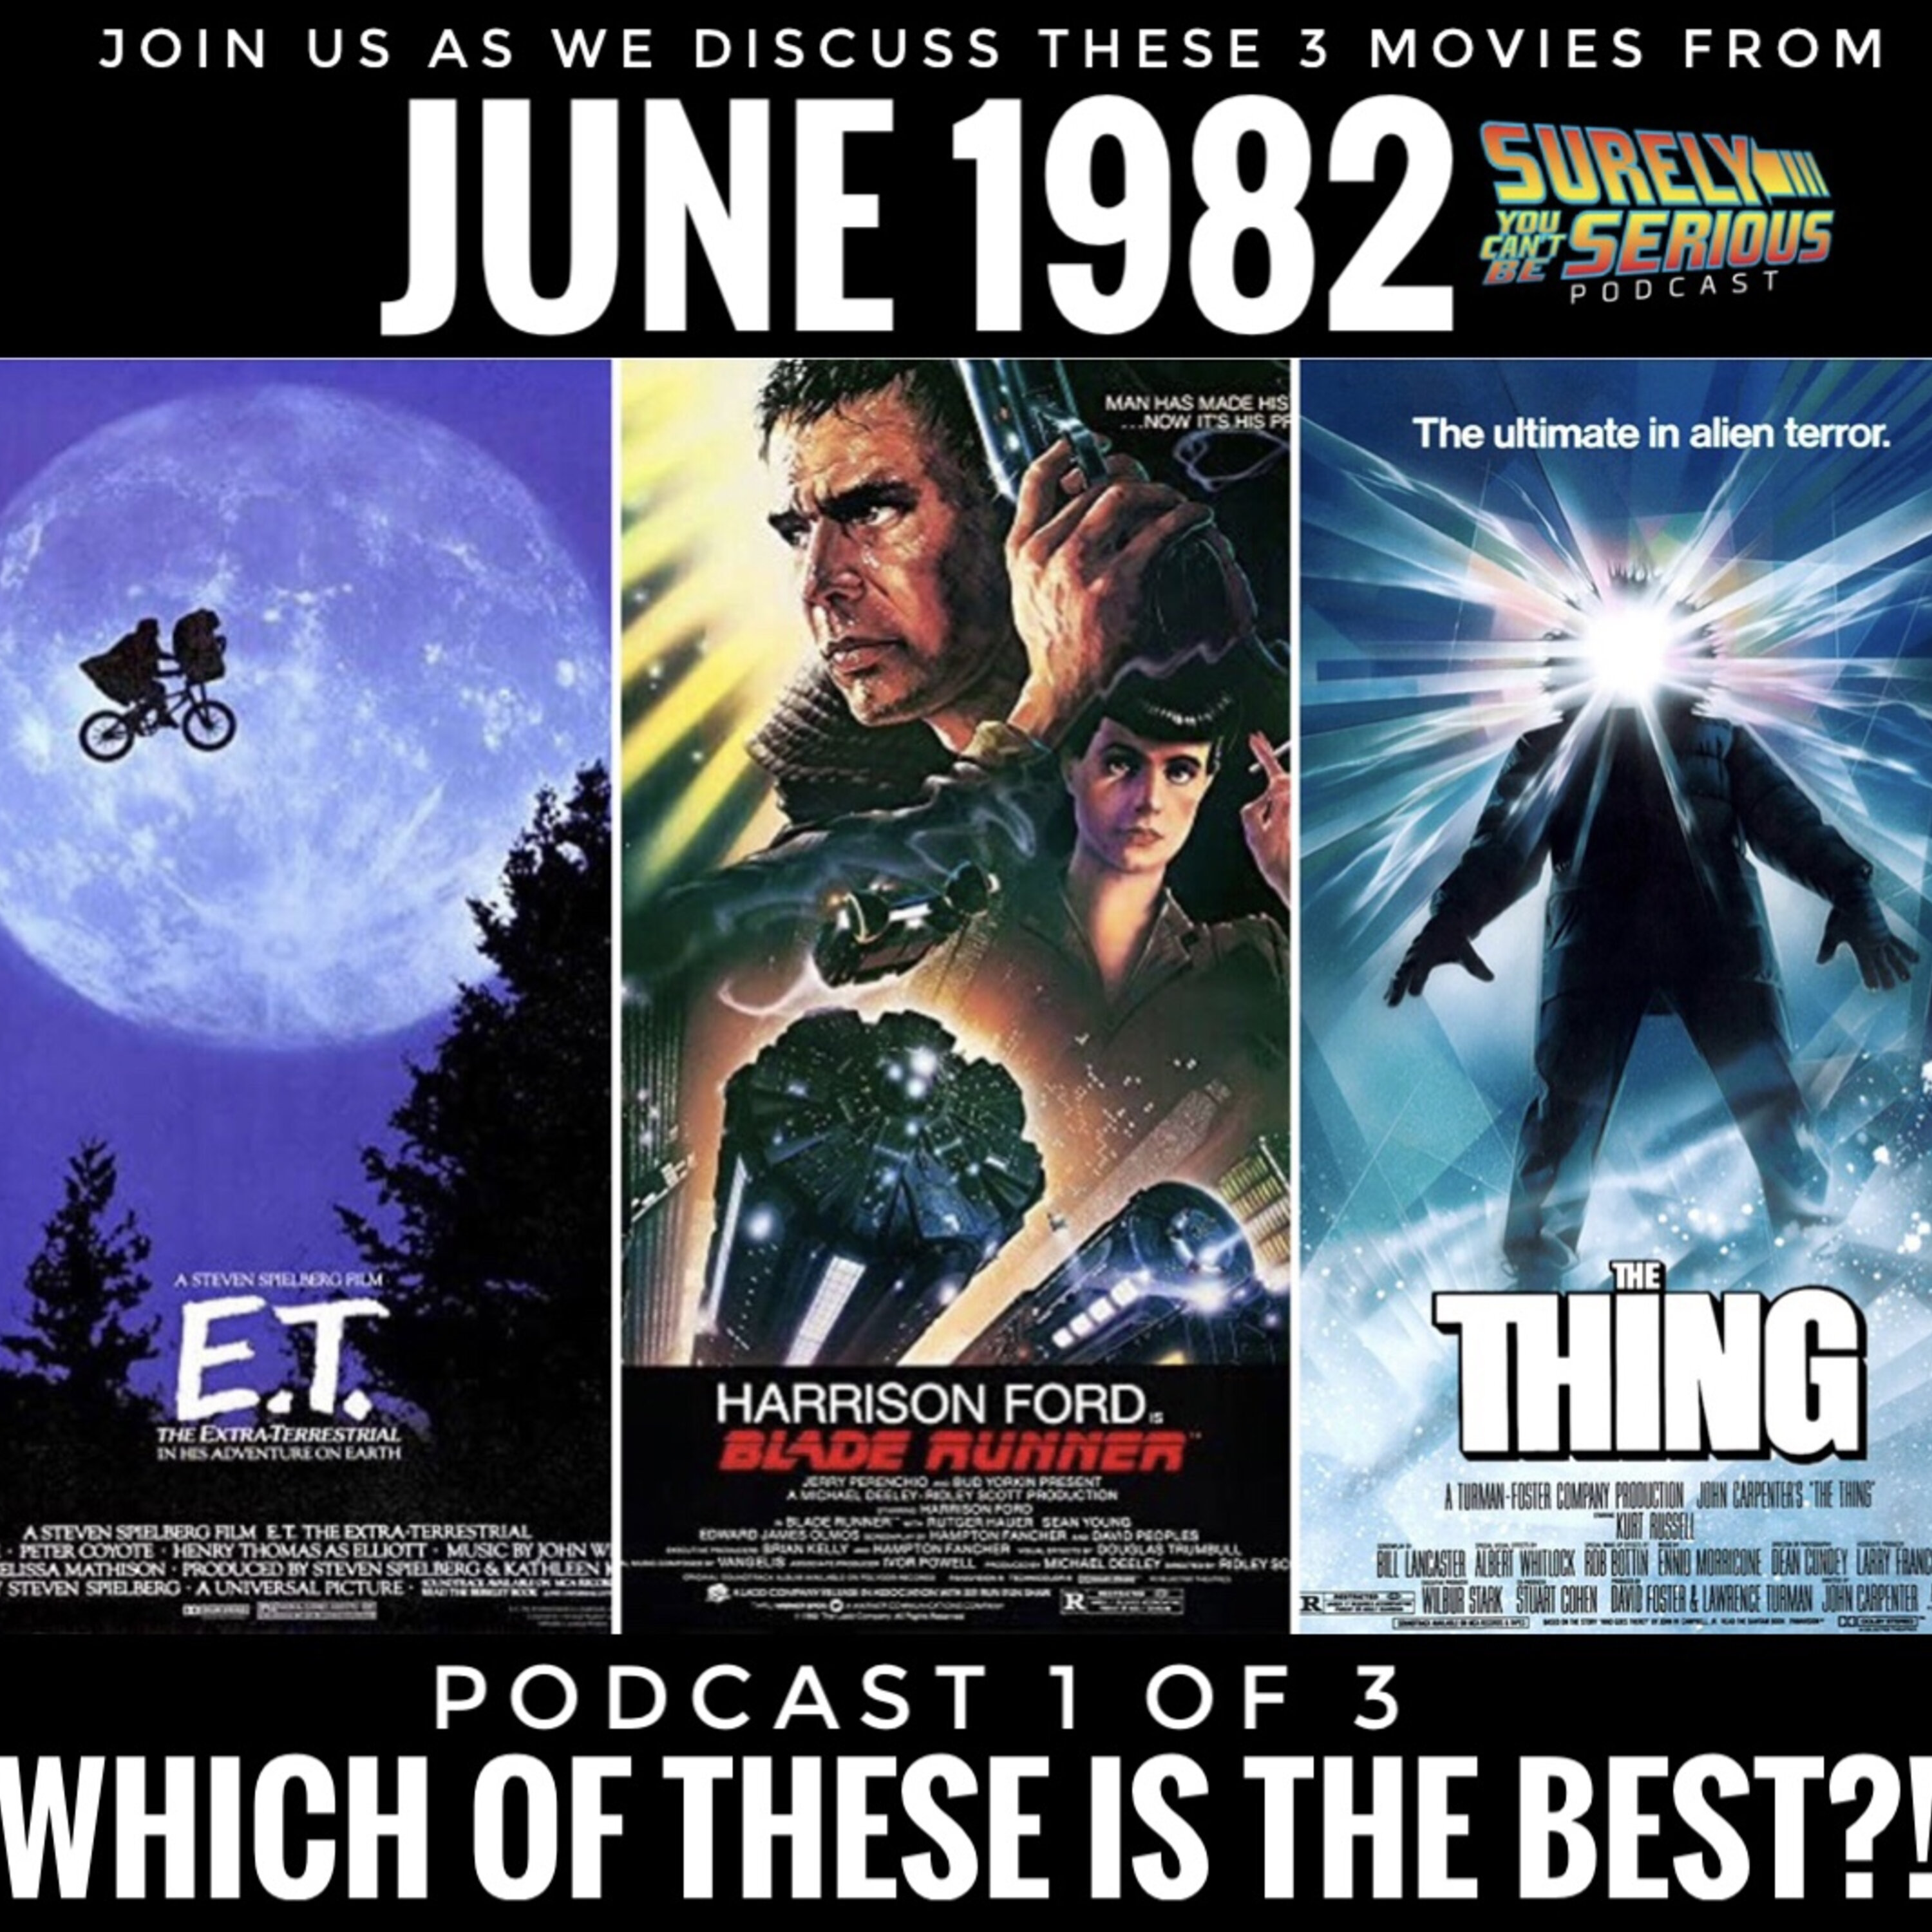 Blade Runner (1982) vs. The Thing (1982) vs. E.T. (1982): Part 1 Image